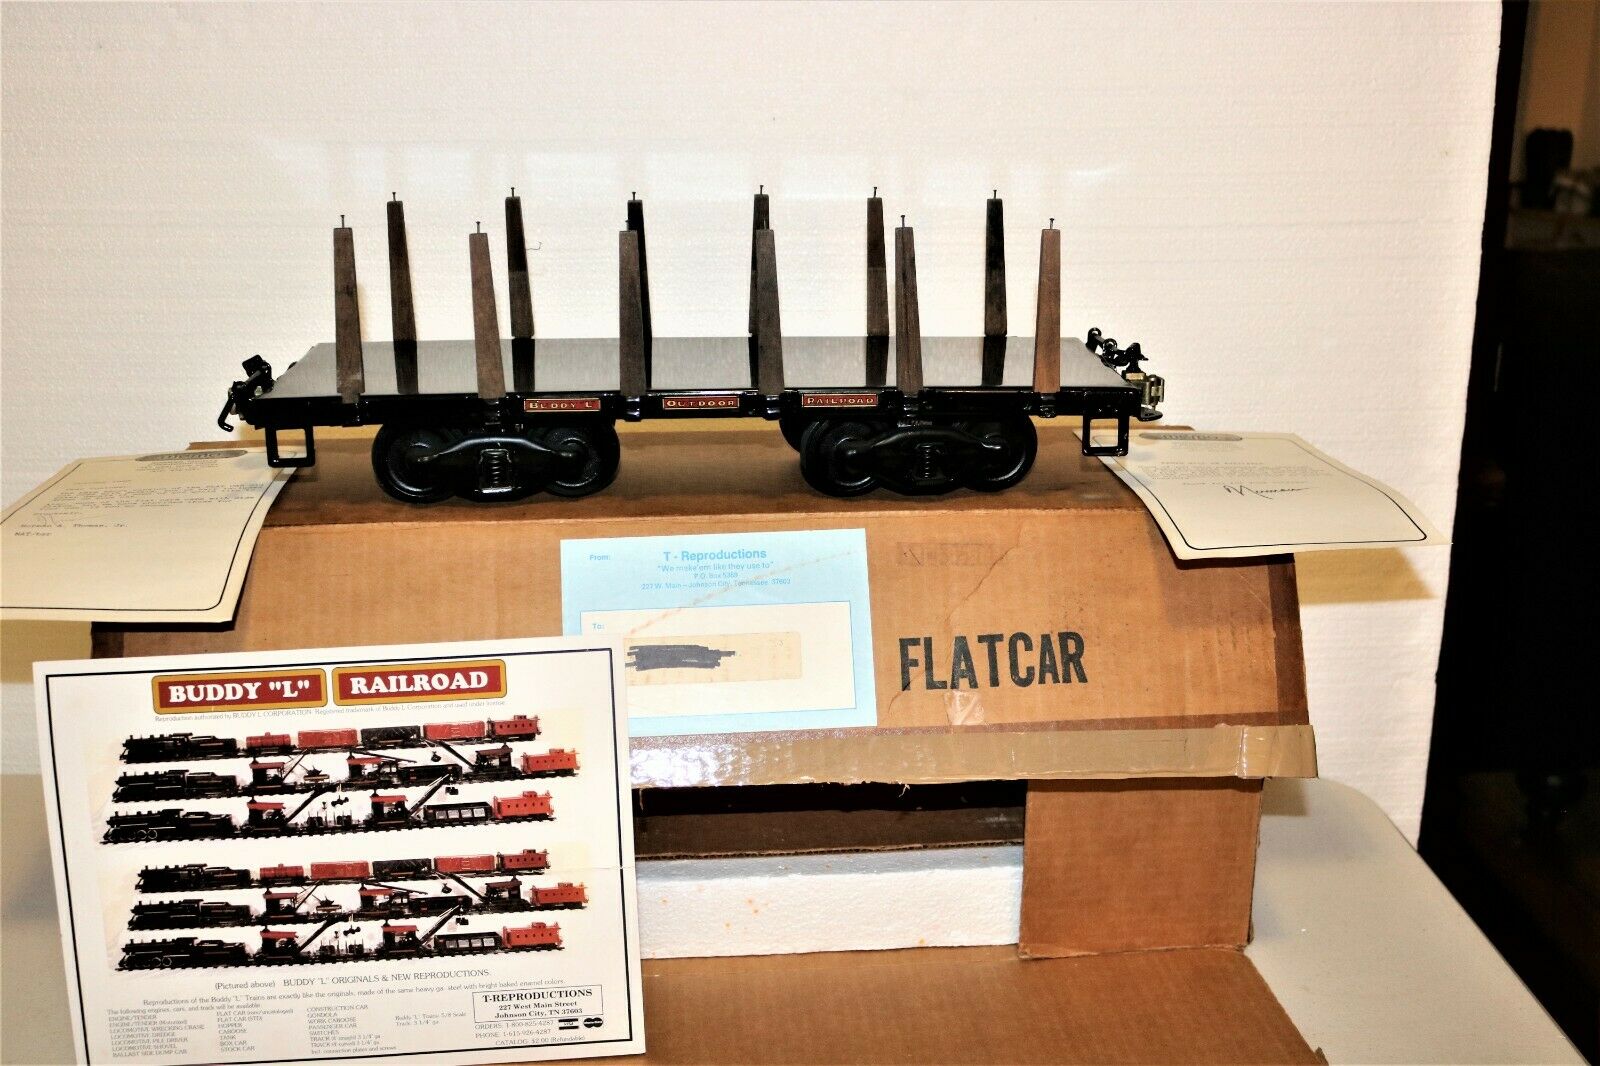 Mint T-reproductions Buddy L Railroad Black Flat Car W/box & Original Foam